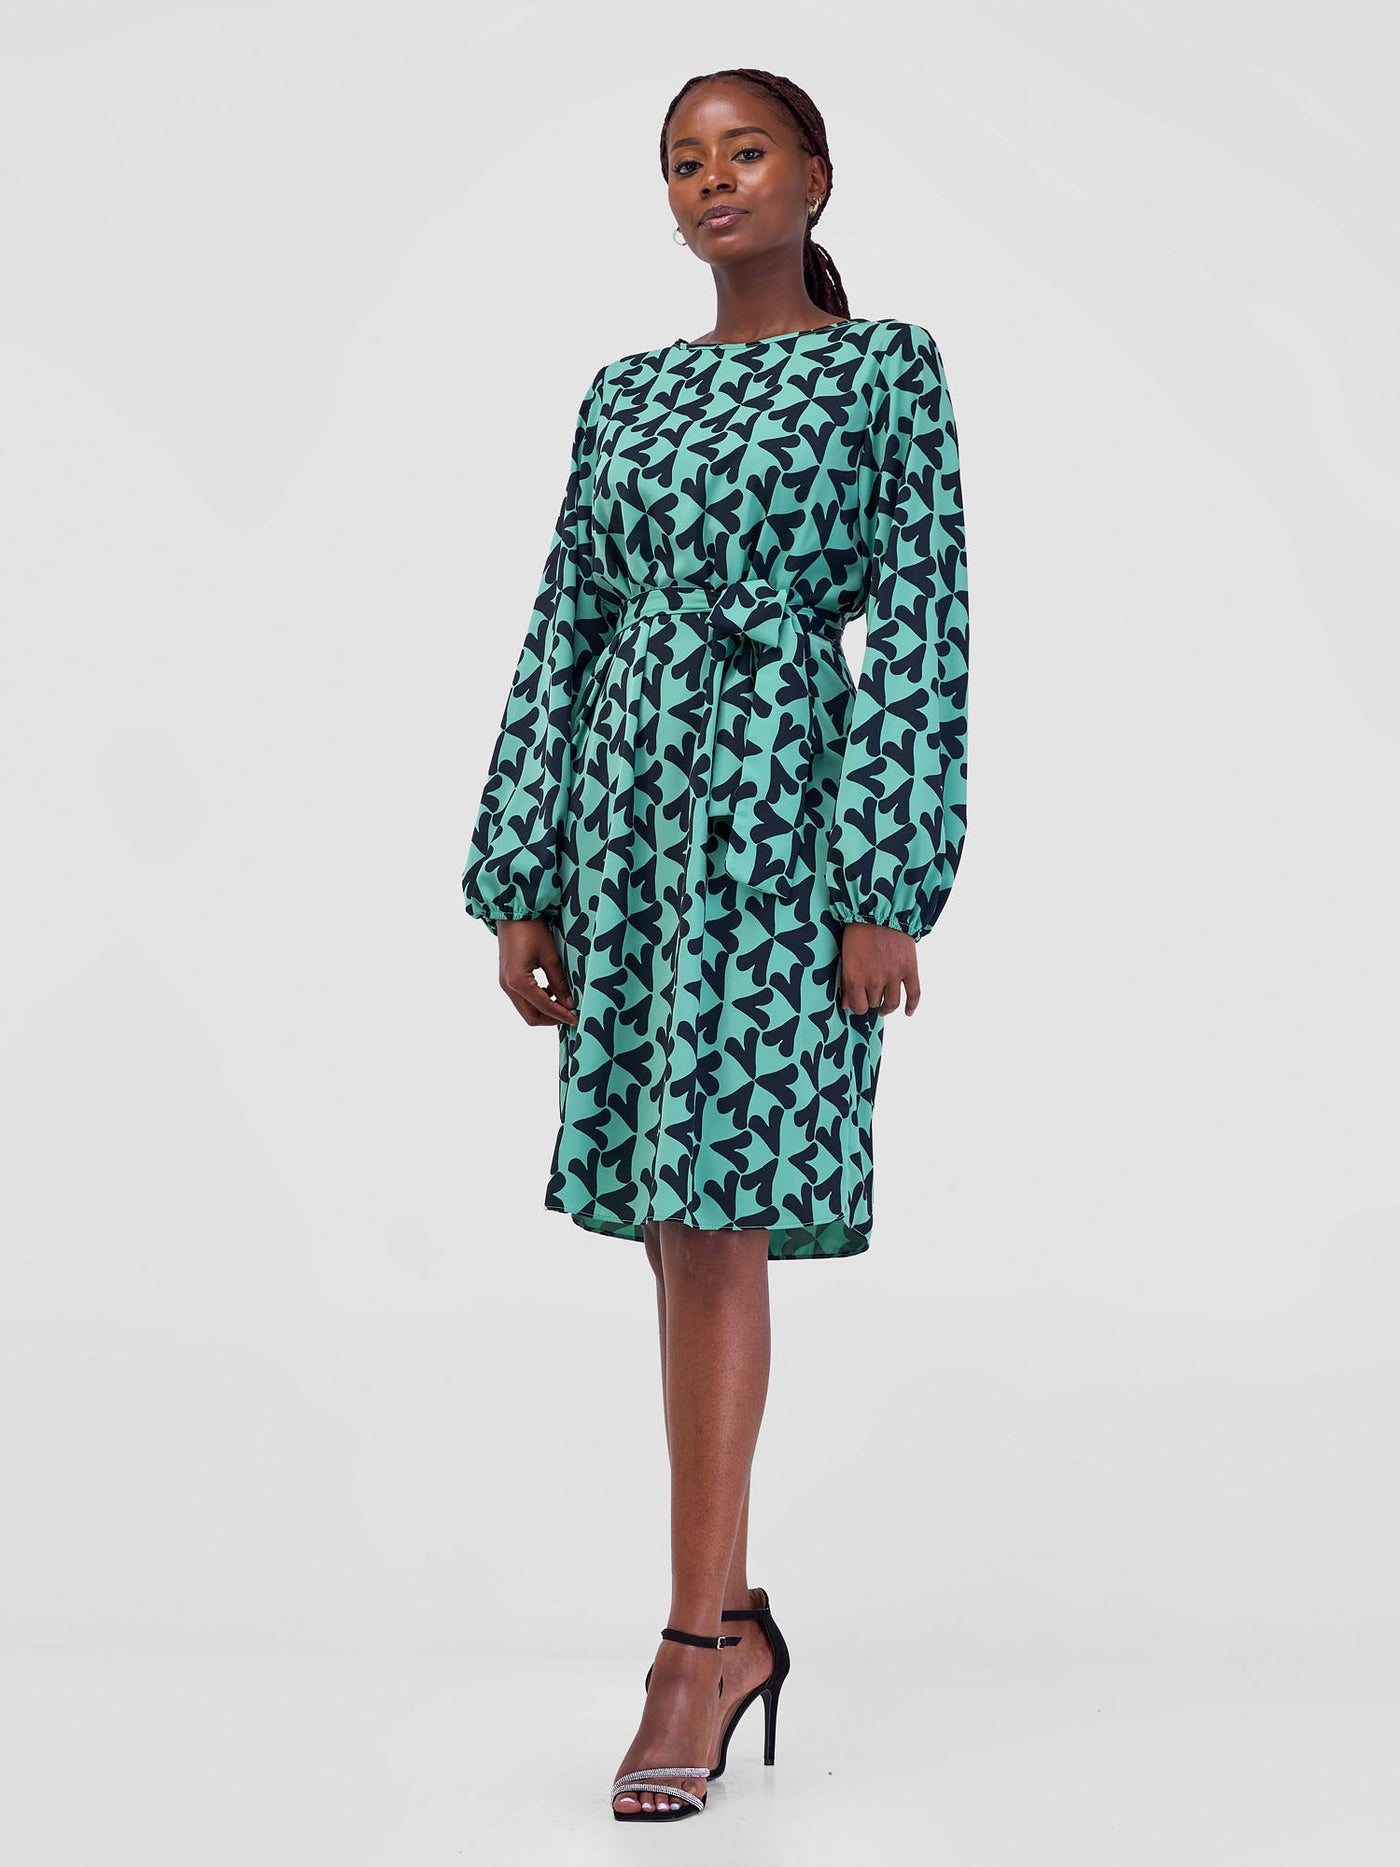 Vivo Zawadi Shift Dress - Lime / Black Zawi Print - Shopzetu